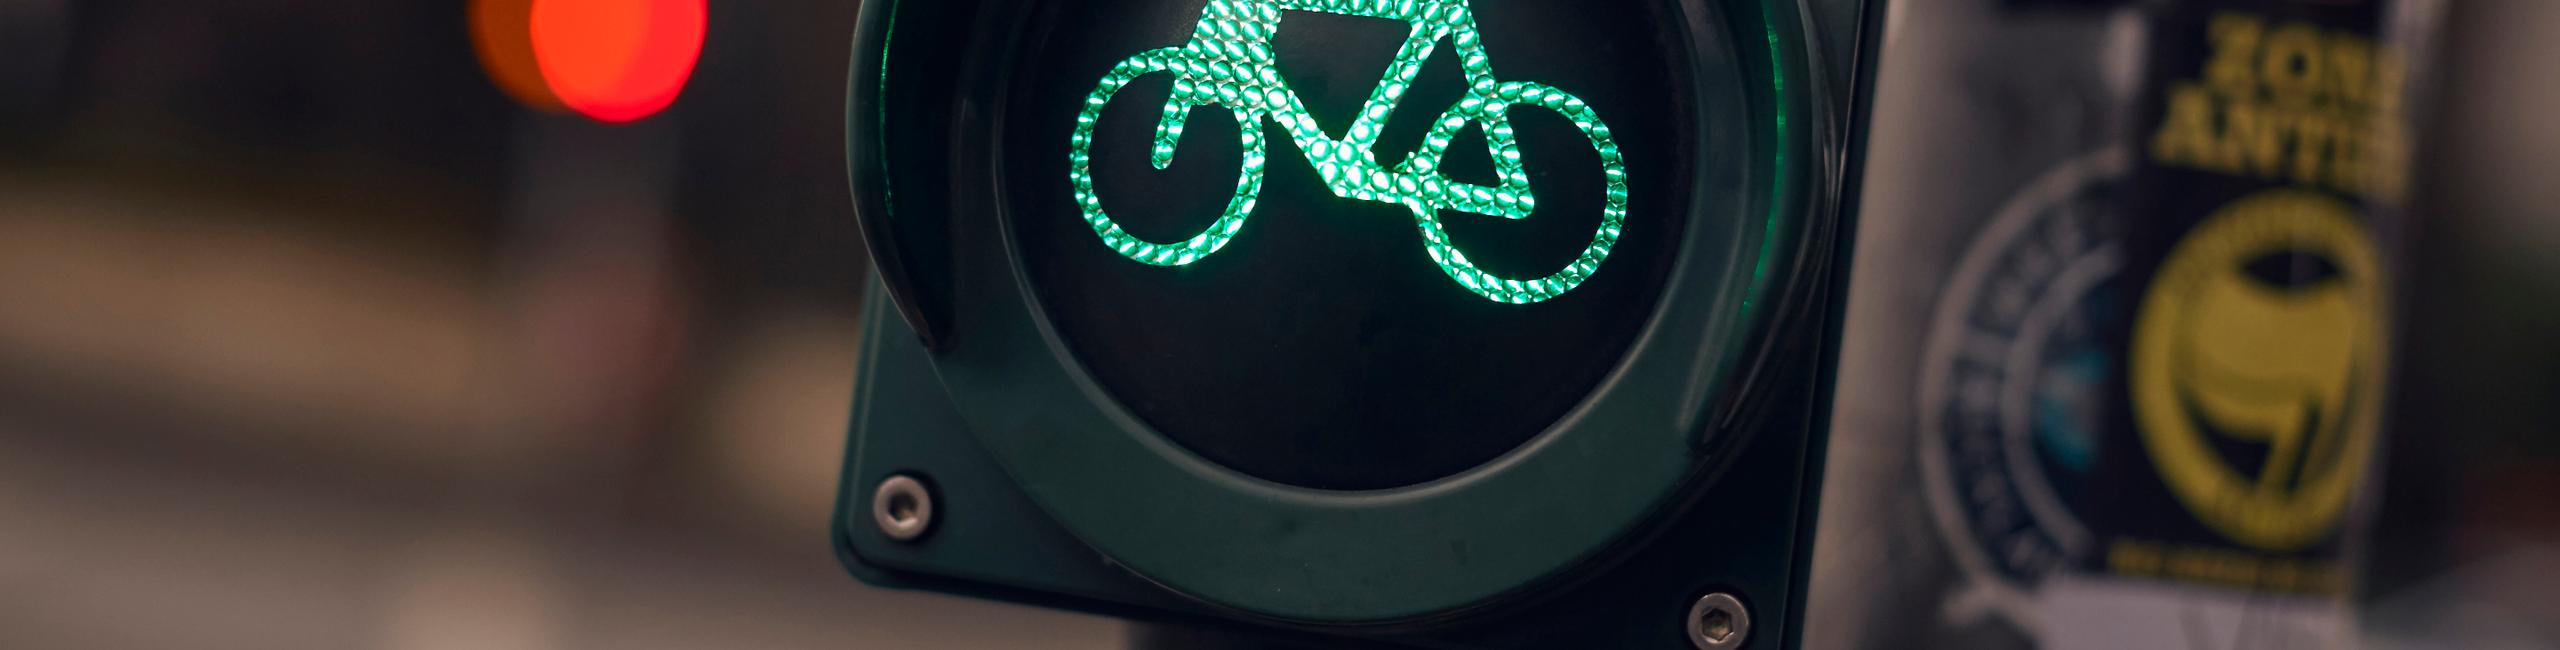 Grünes Ampelzeichen für BIKE&CO-Fahrradfachhändler